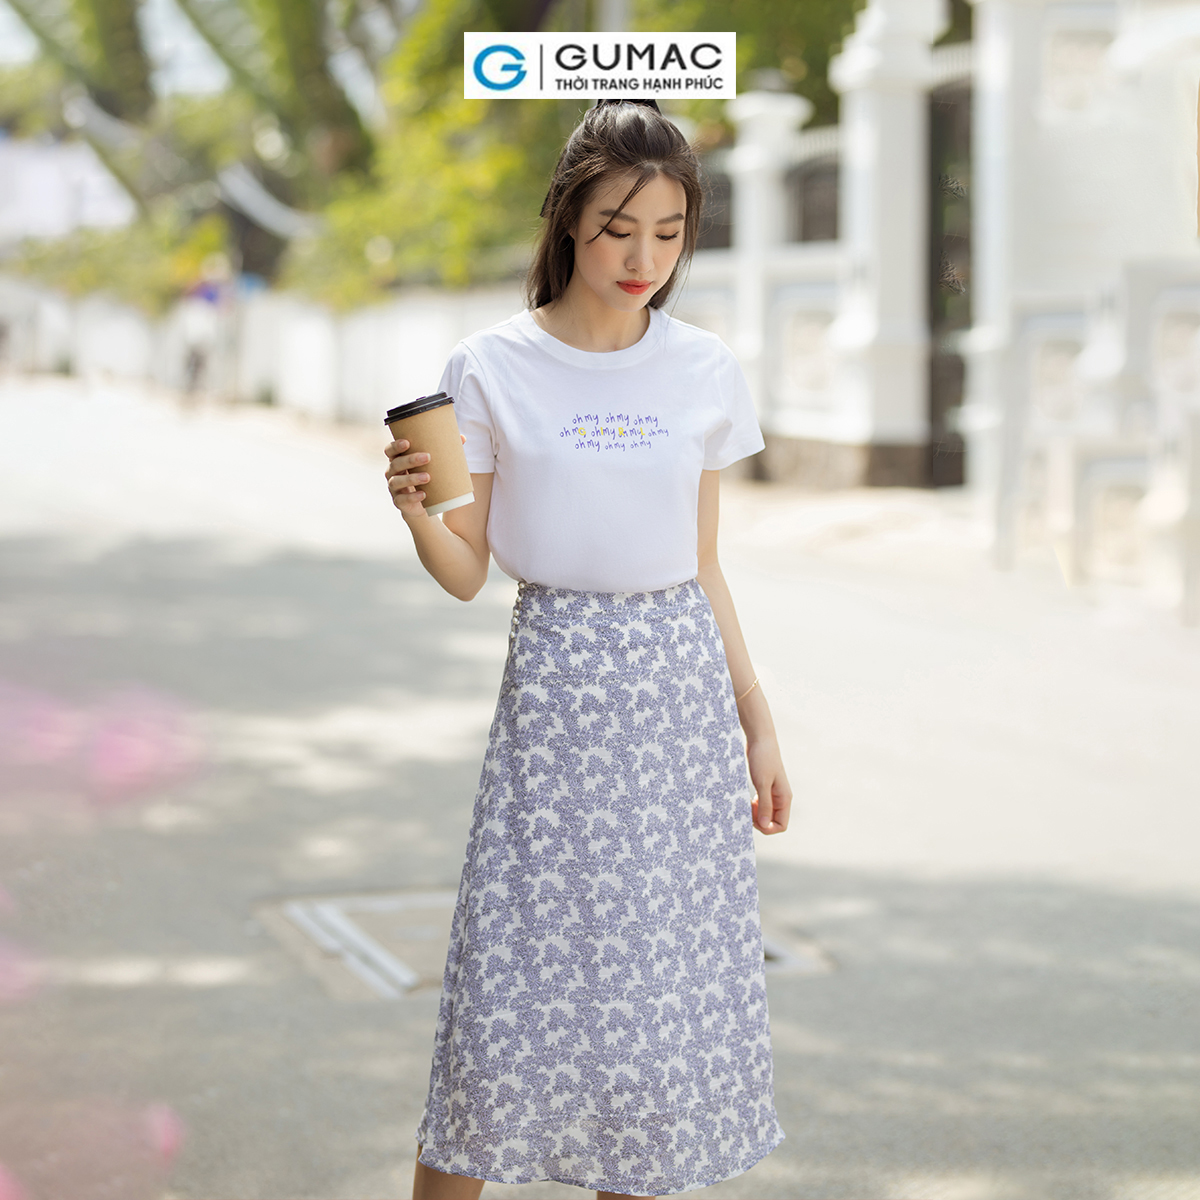 Chân váy A họa tiết hoa phối nút thanh lịch nữ tính thời trang GUMAC VD07022